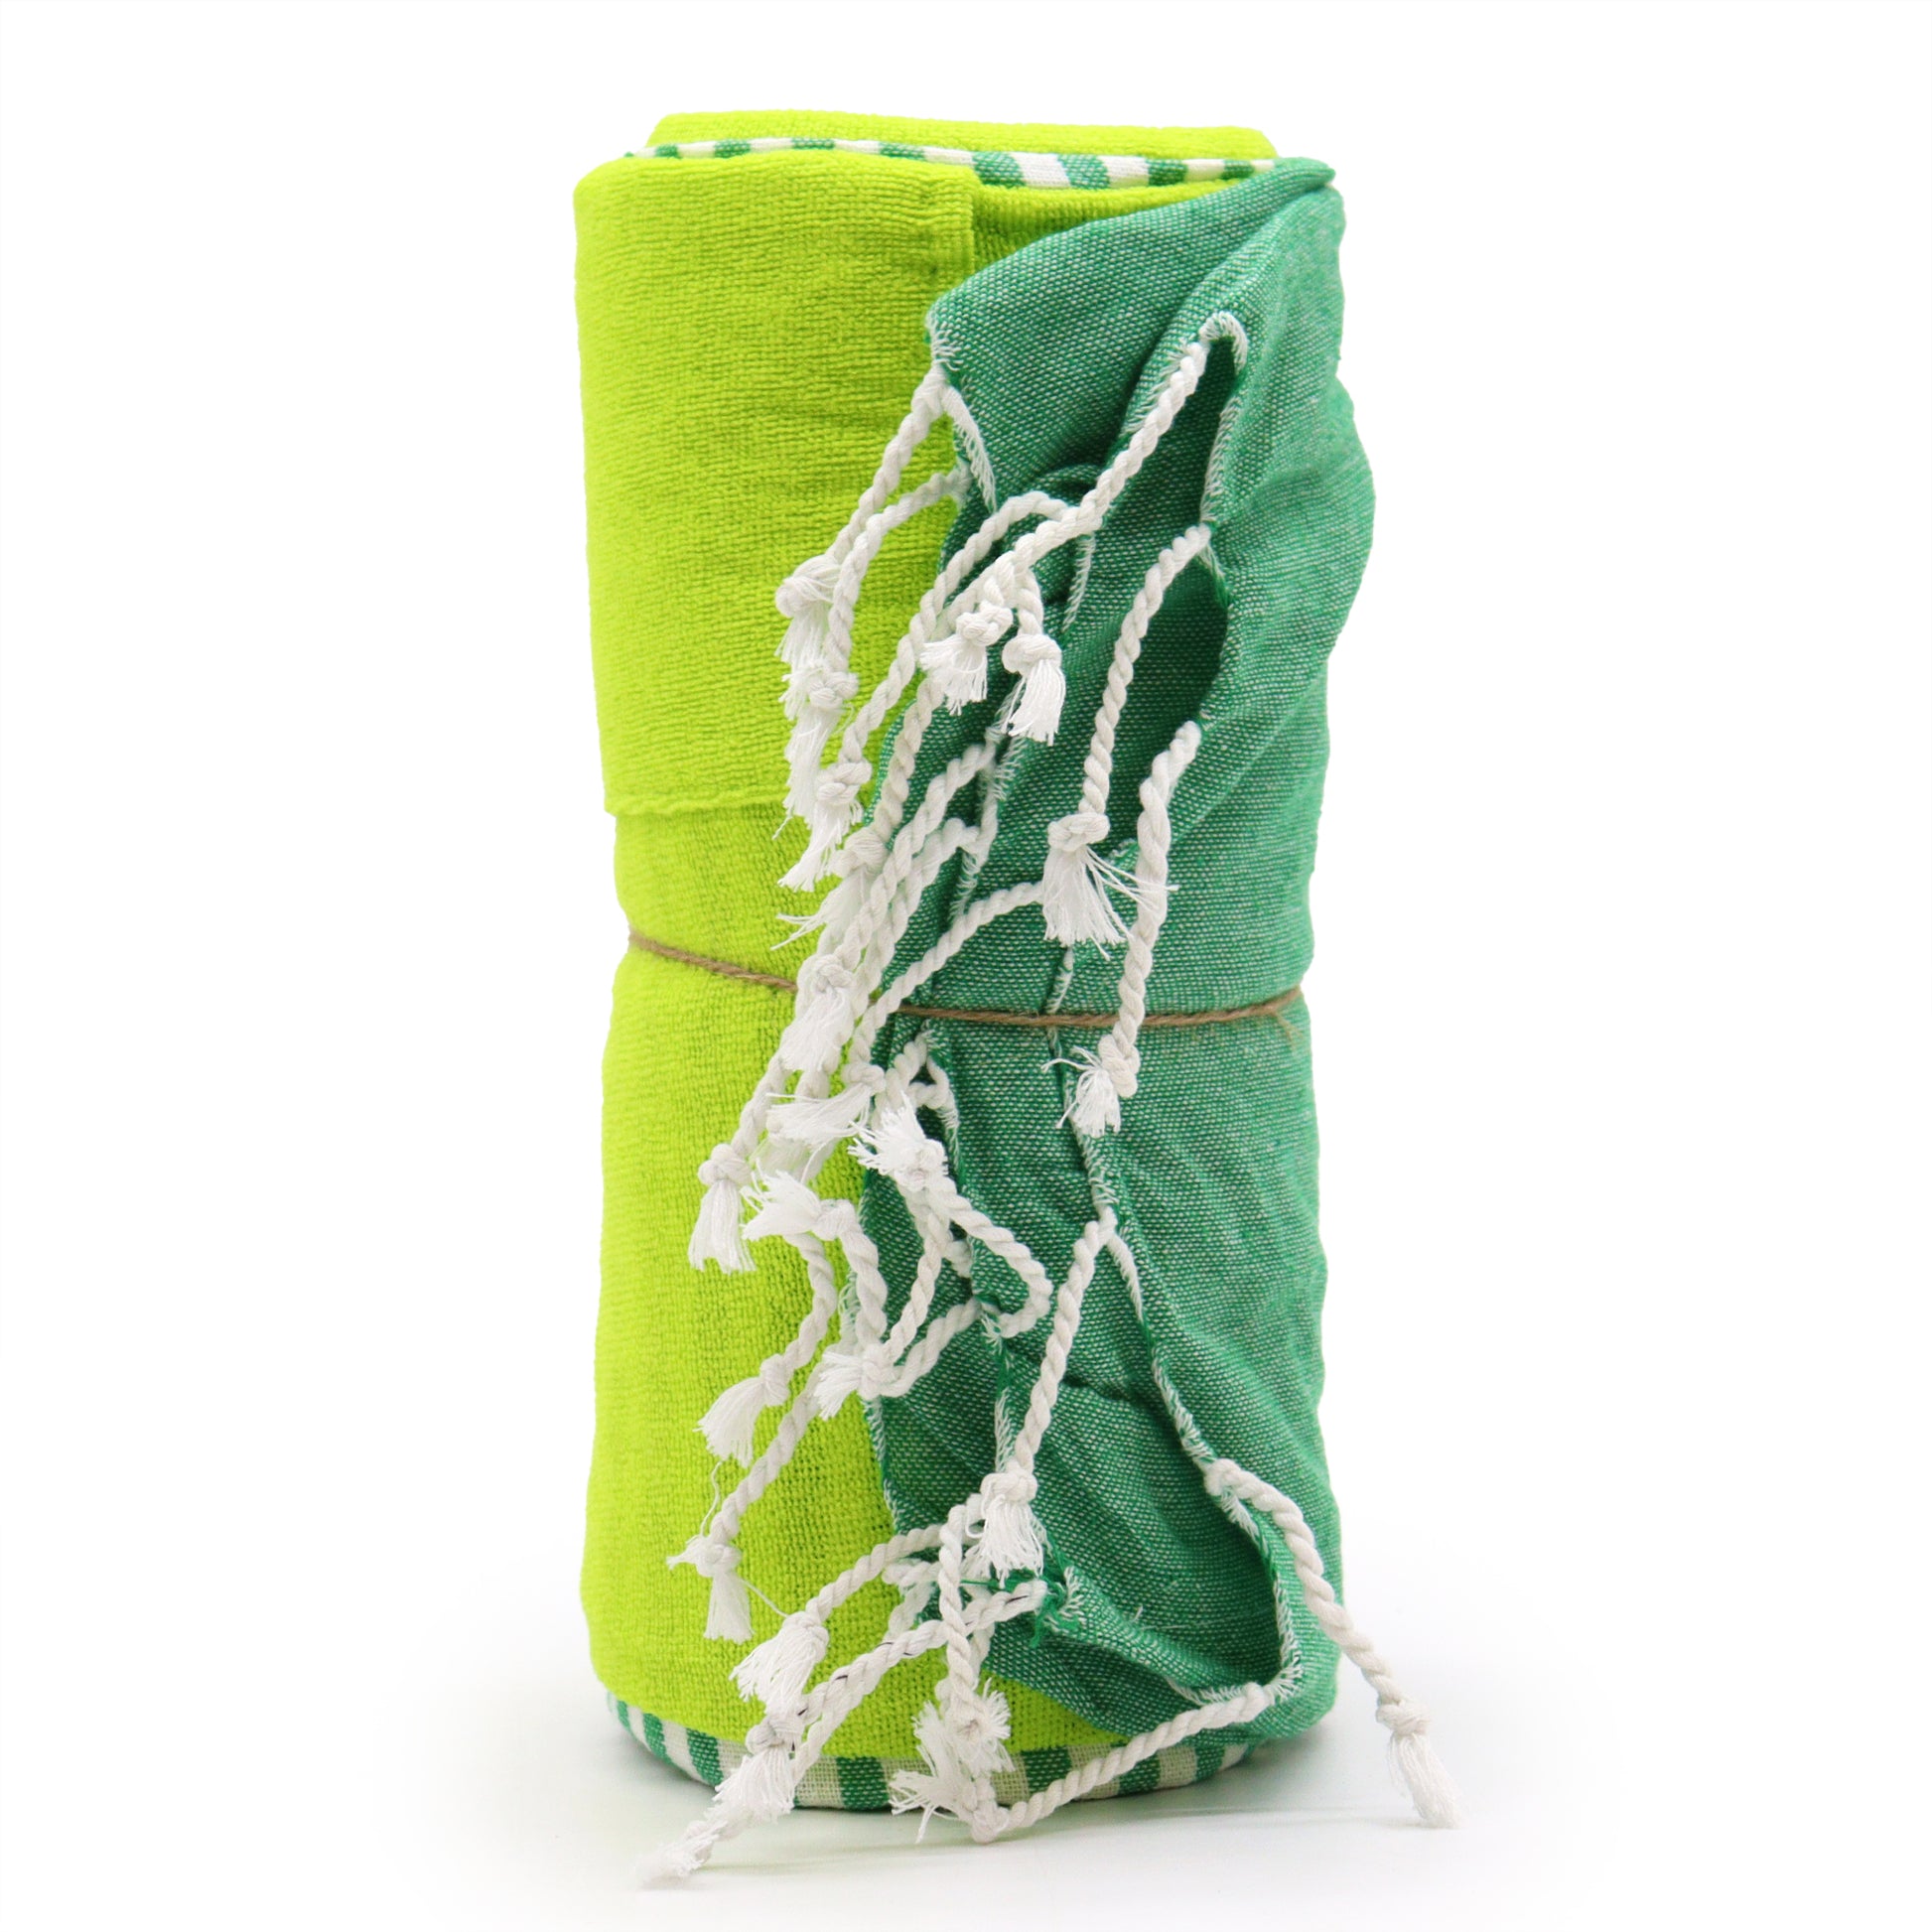 Cotton Pario Towel - 100x180 cm - Picnic Green - Kaftans direct